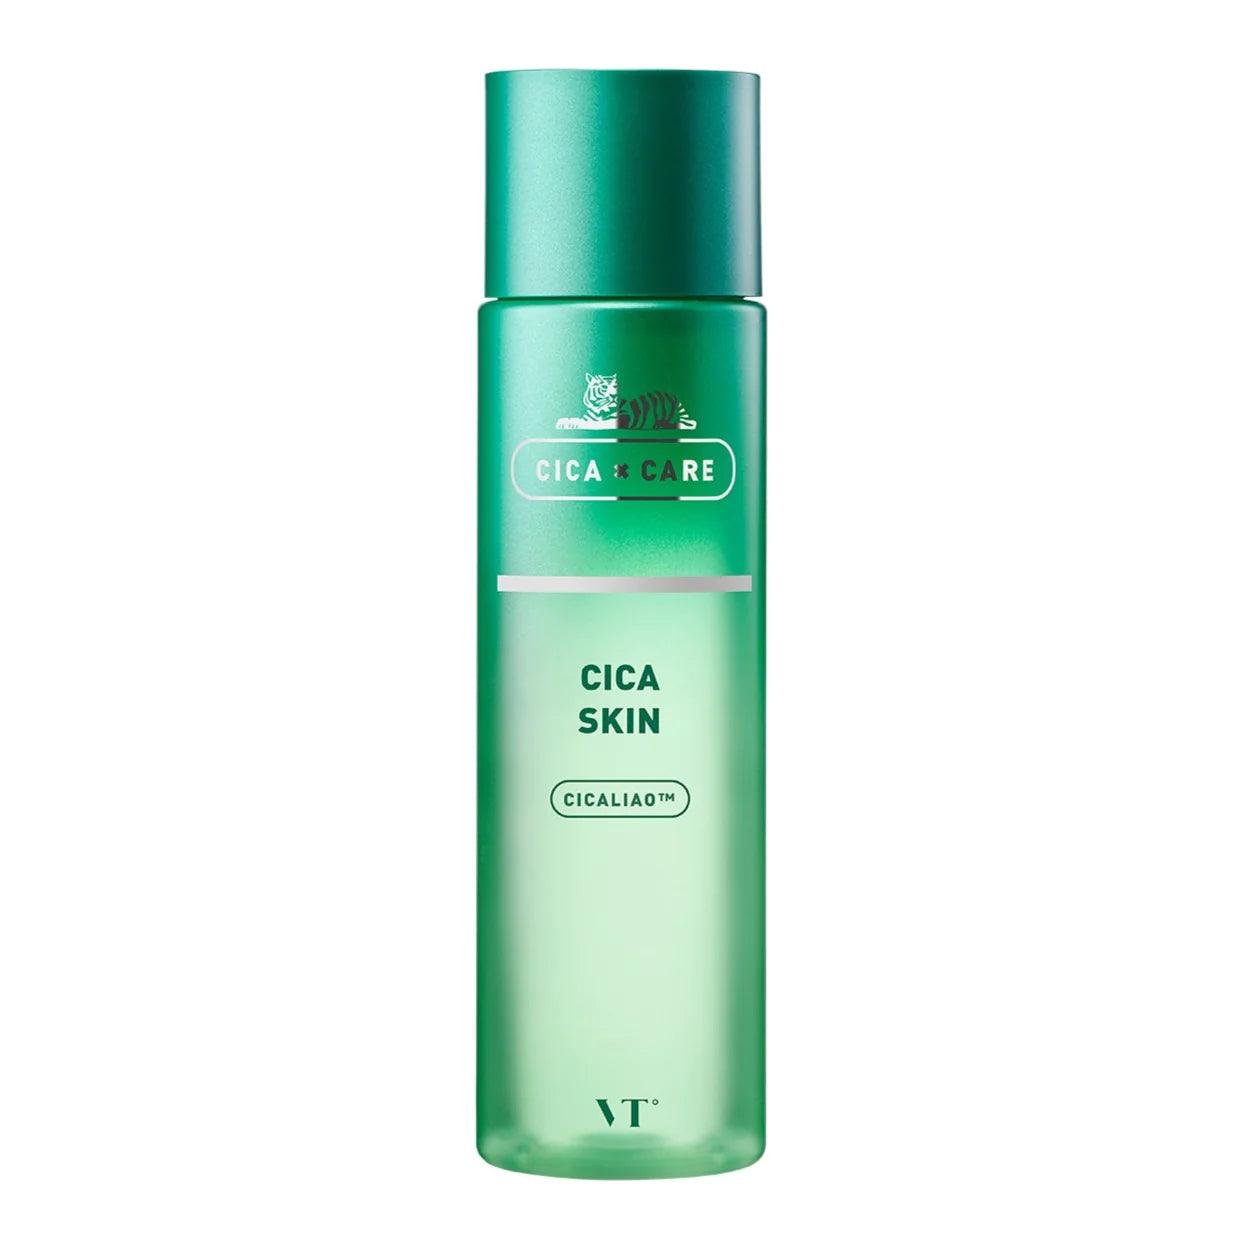 VT Cica Skin - 200 ml